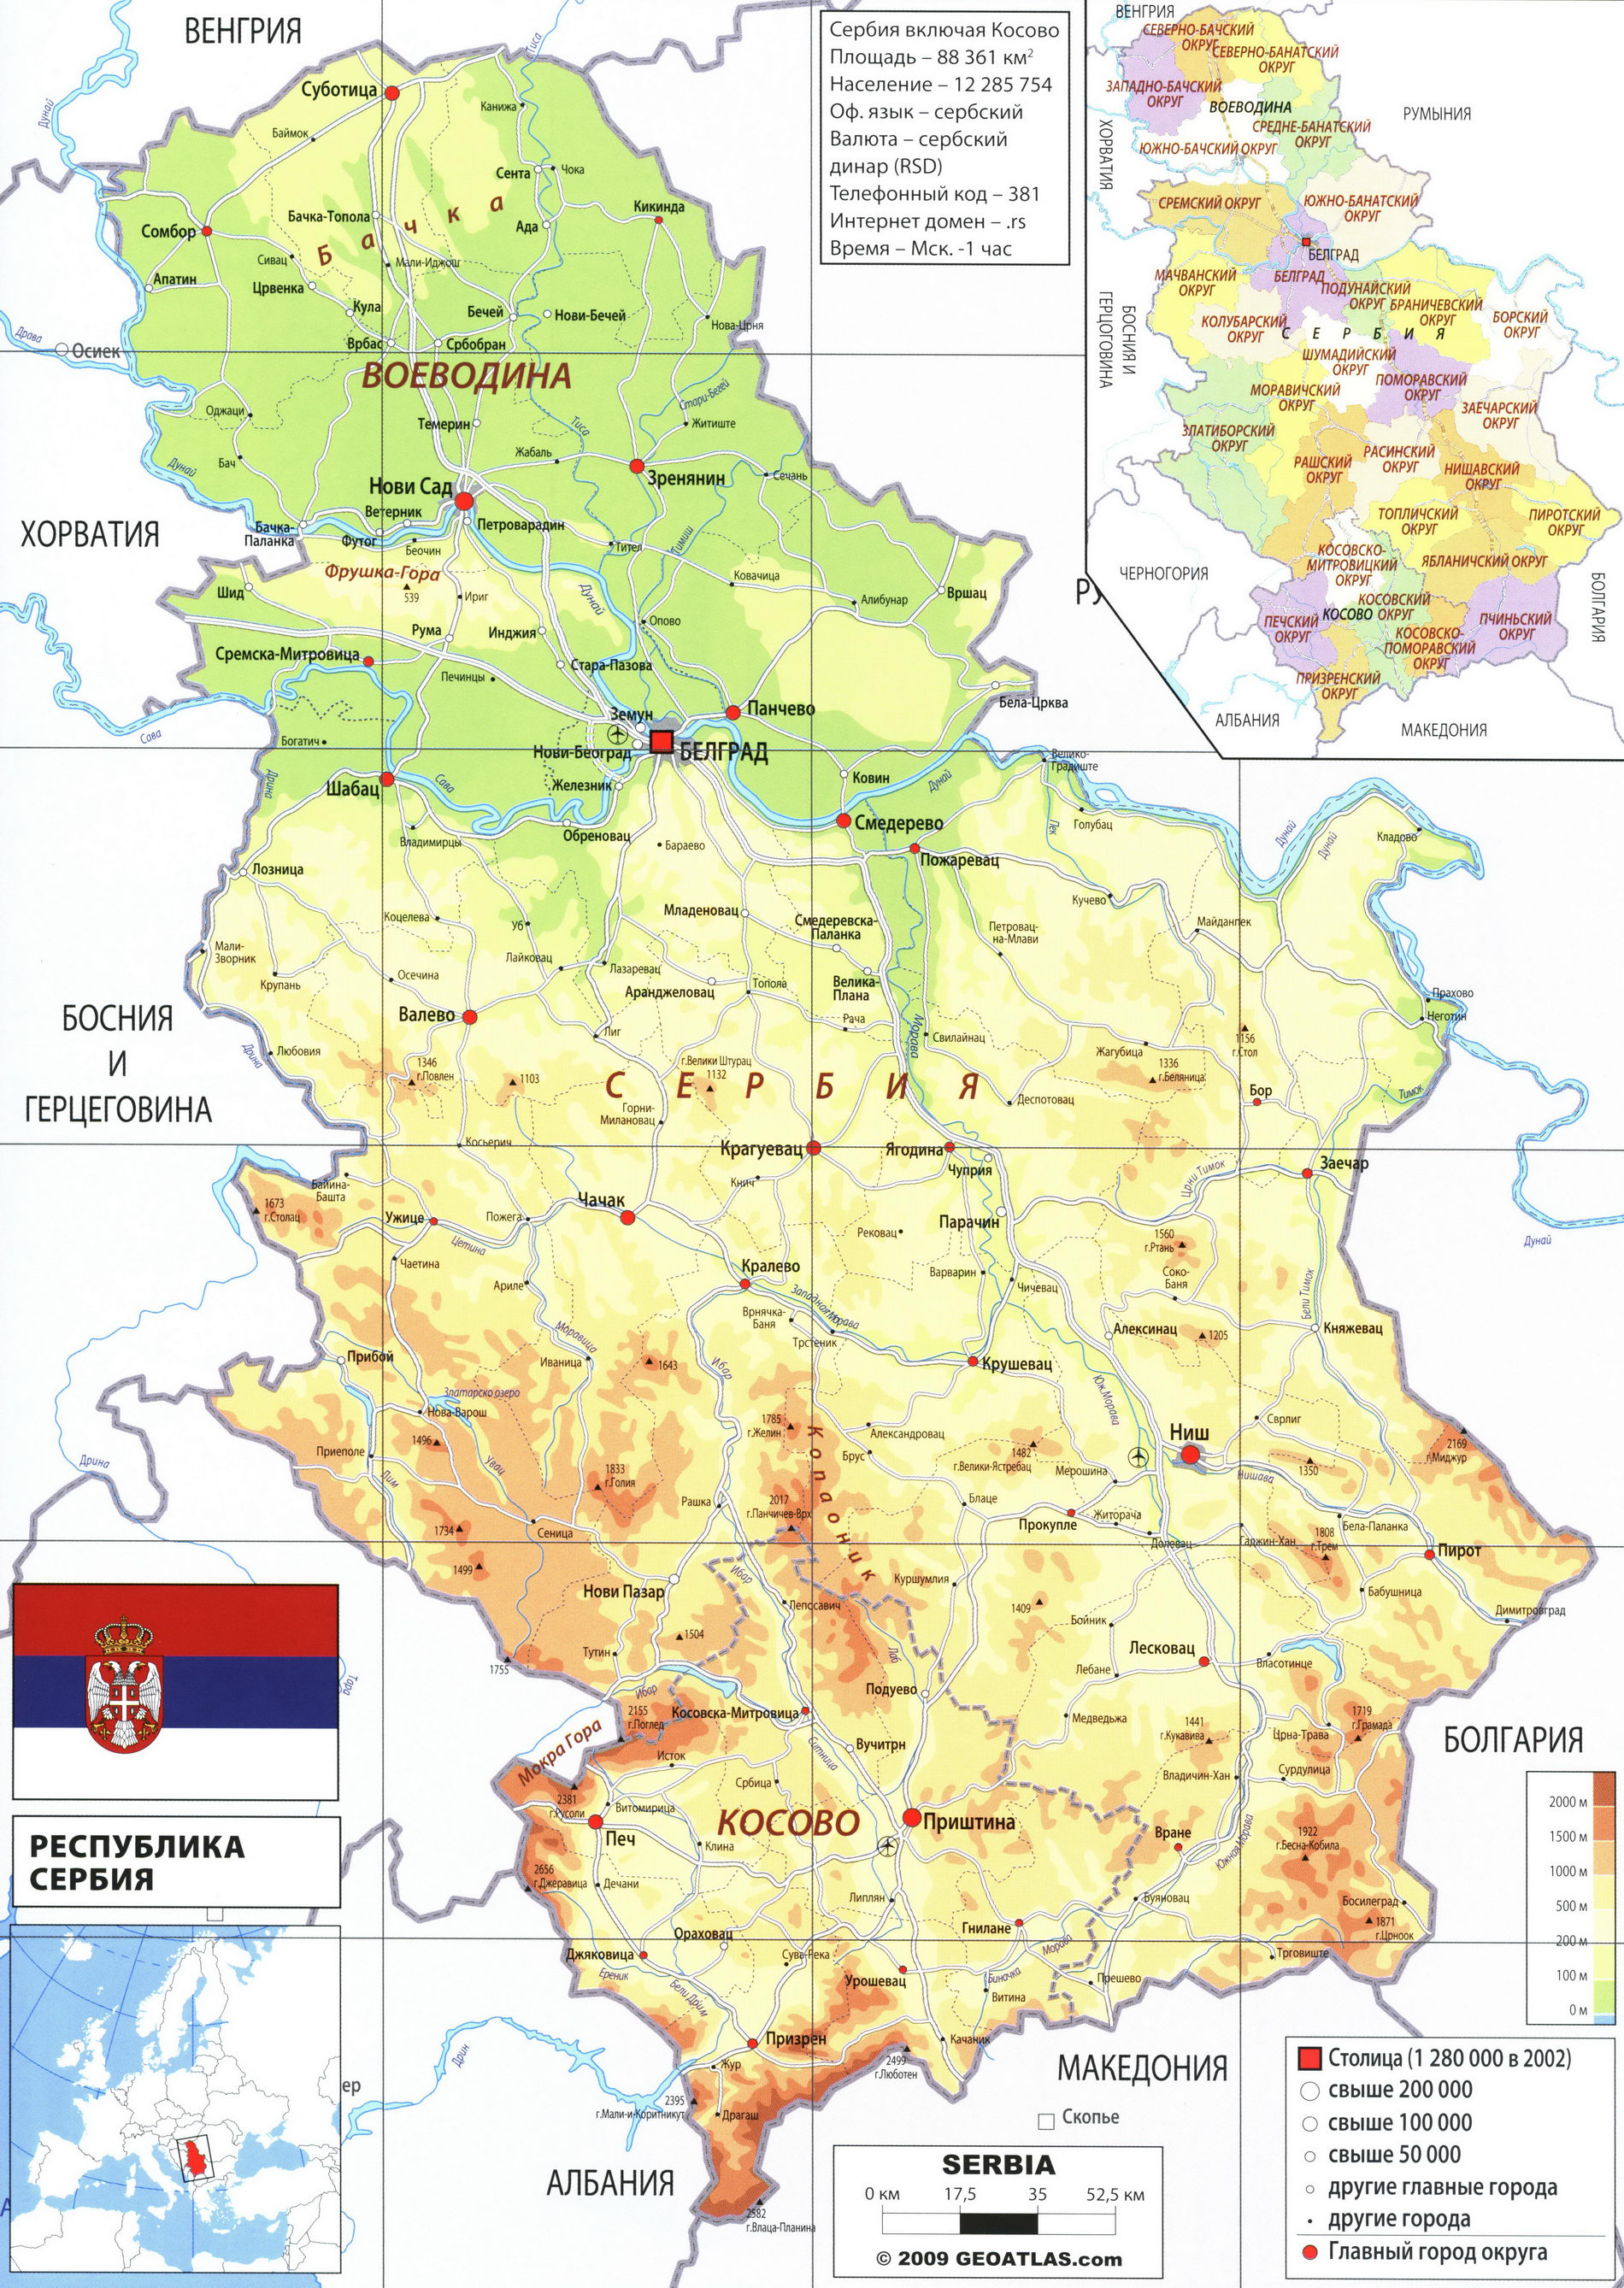 Сербия карта на русском языке